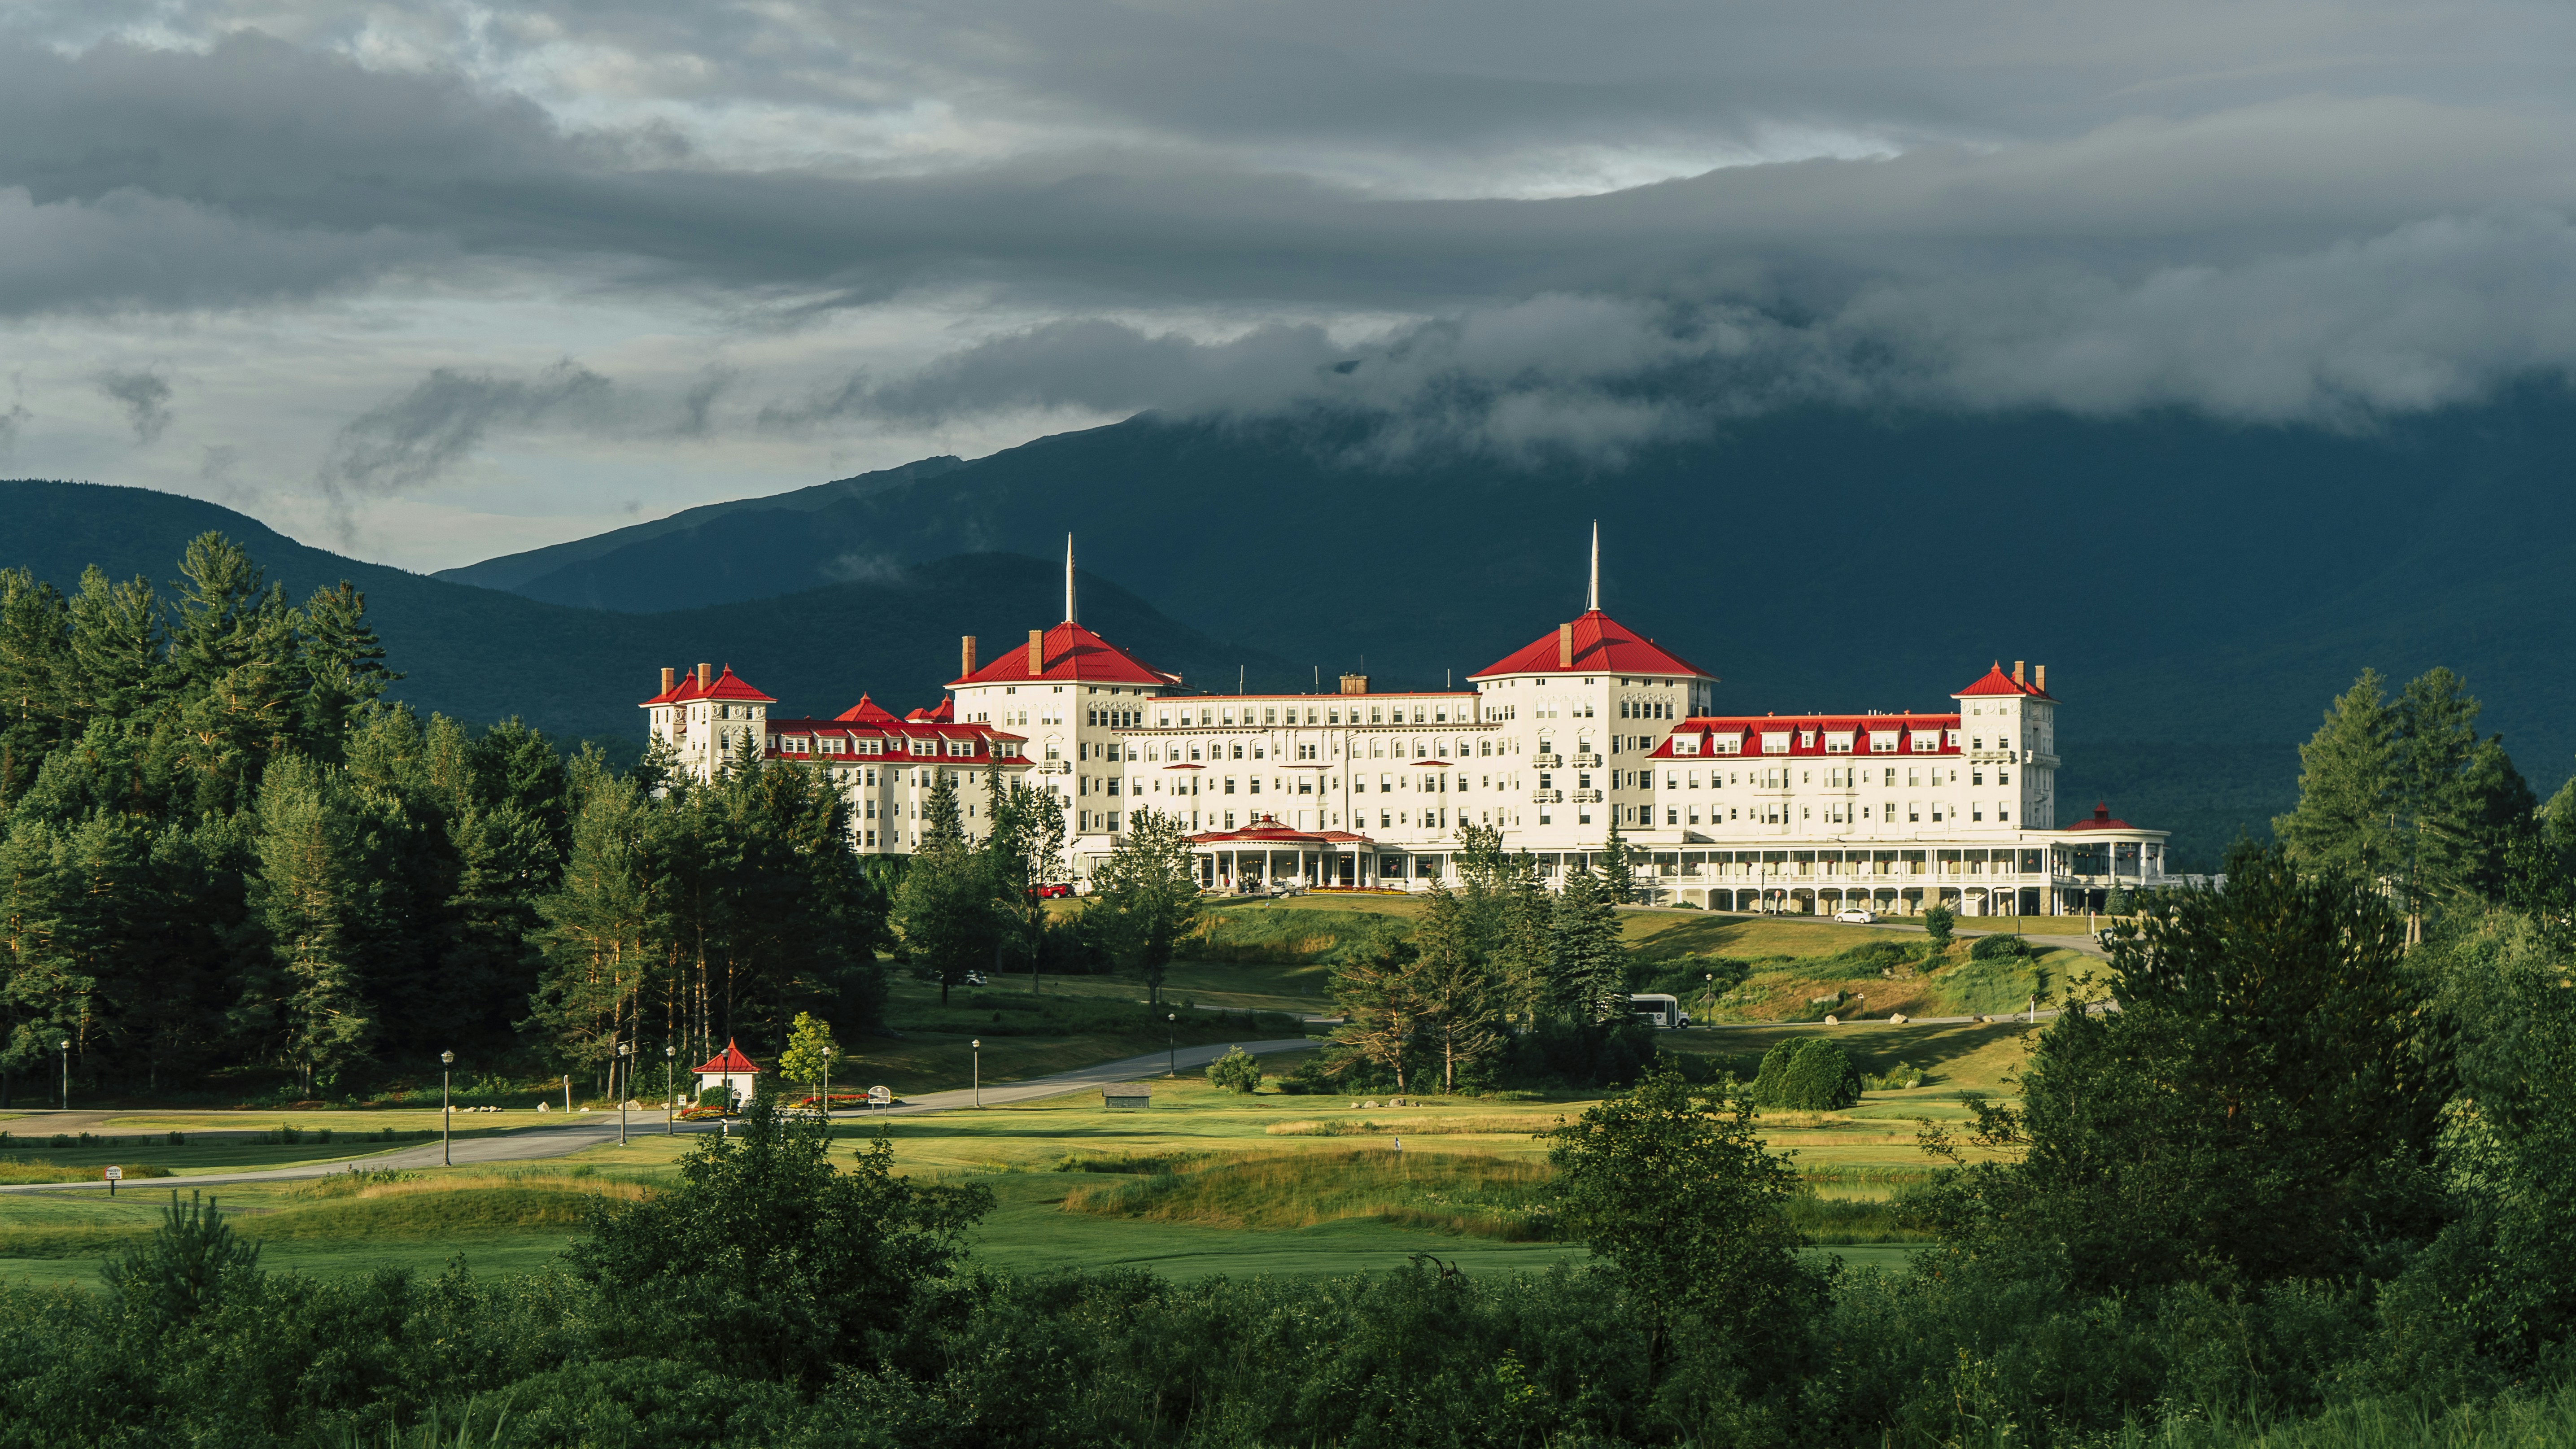 El Hotel Mount Washington fue la sede de la Conferencia de Bretton Woods, en 1944